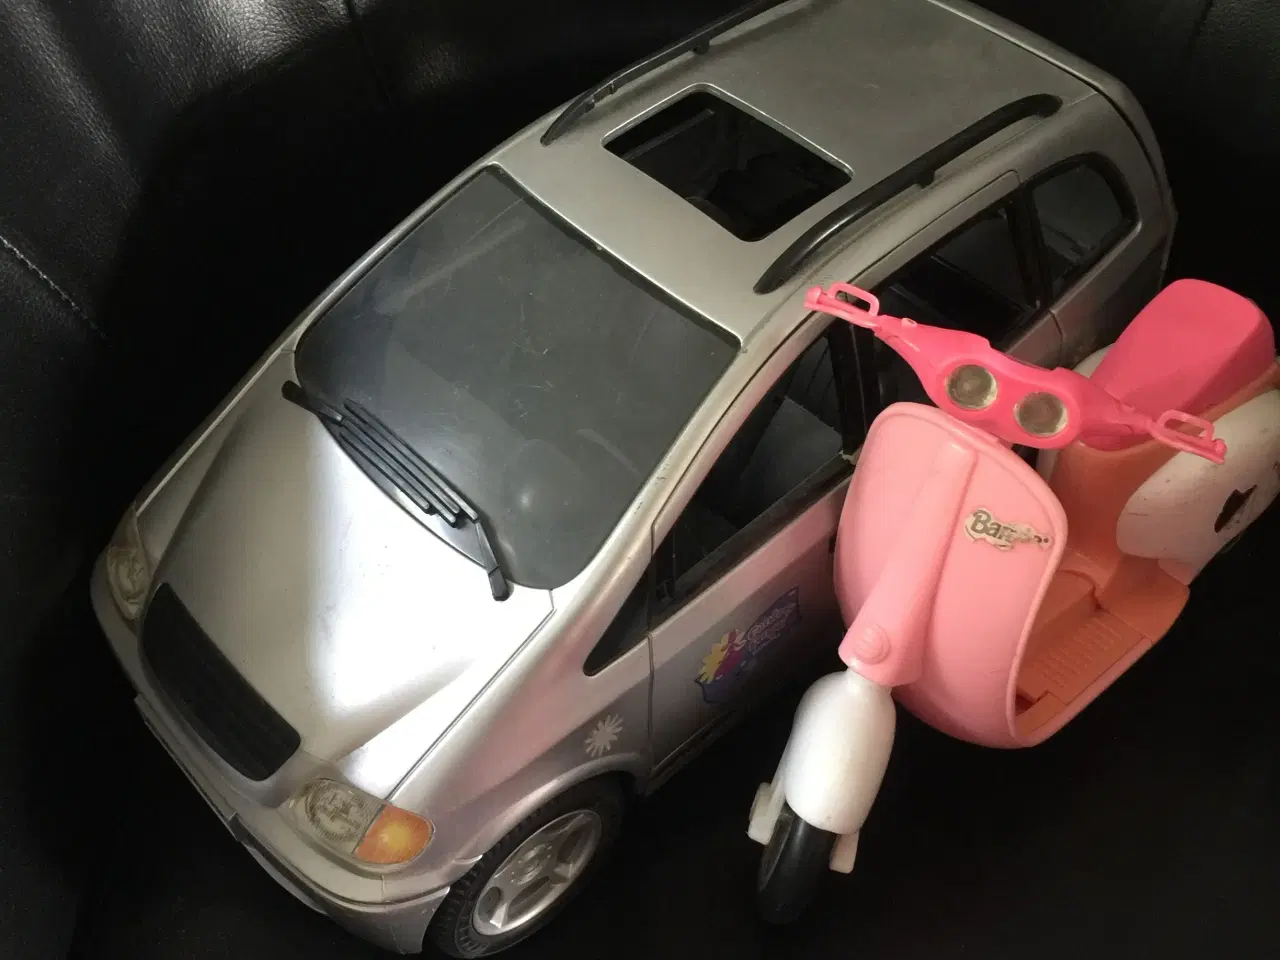 Billede 2 - Barbiebil og Barbiescooter